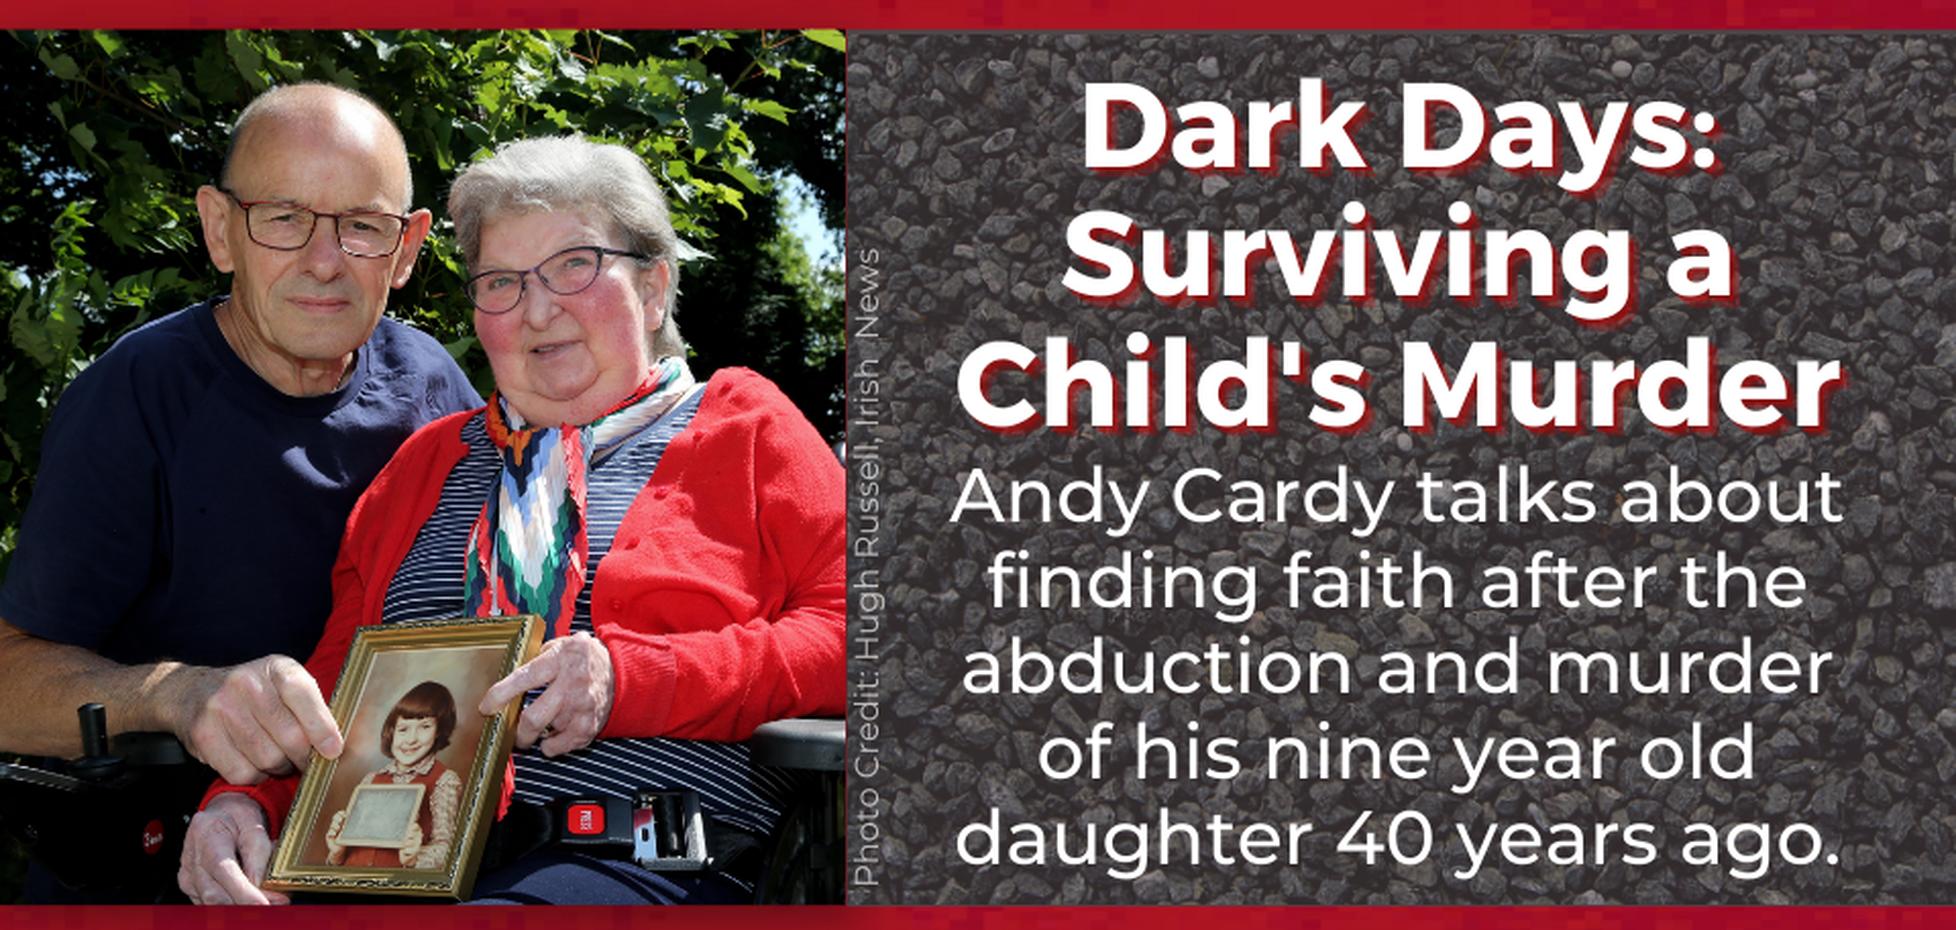 Dark Days: Surviving a Child’s Murder